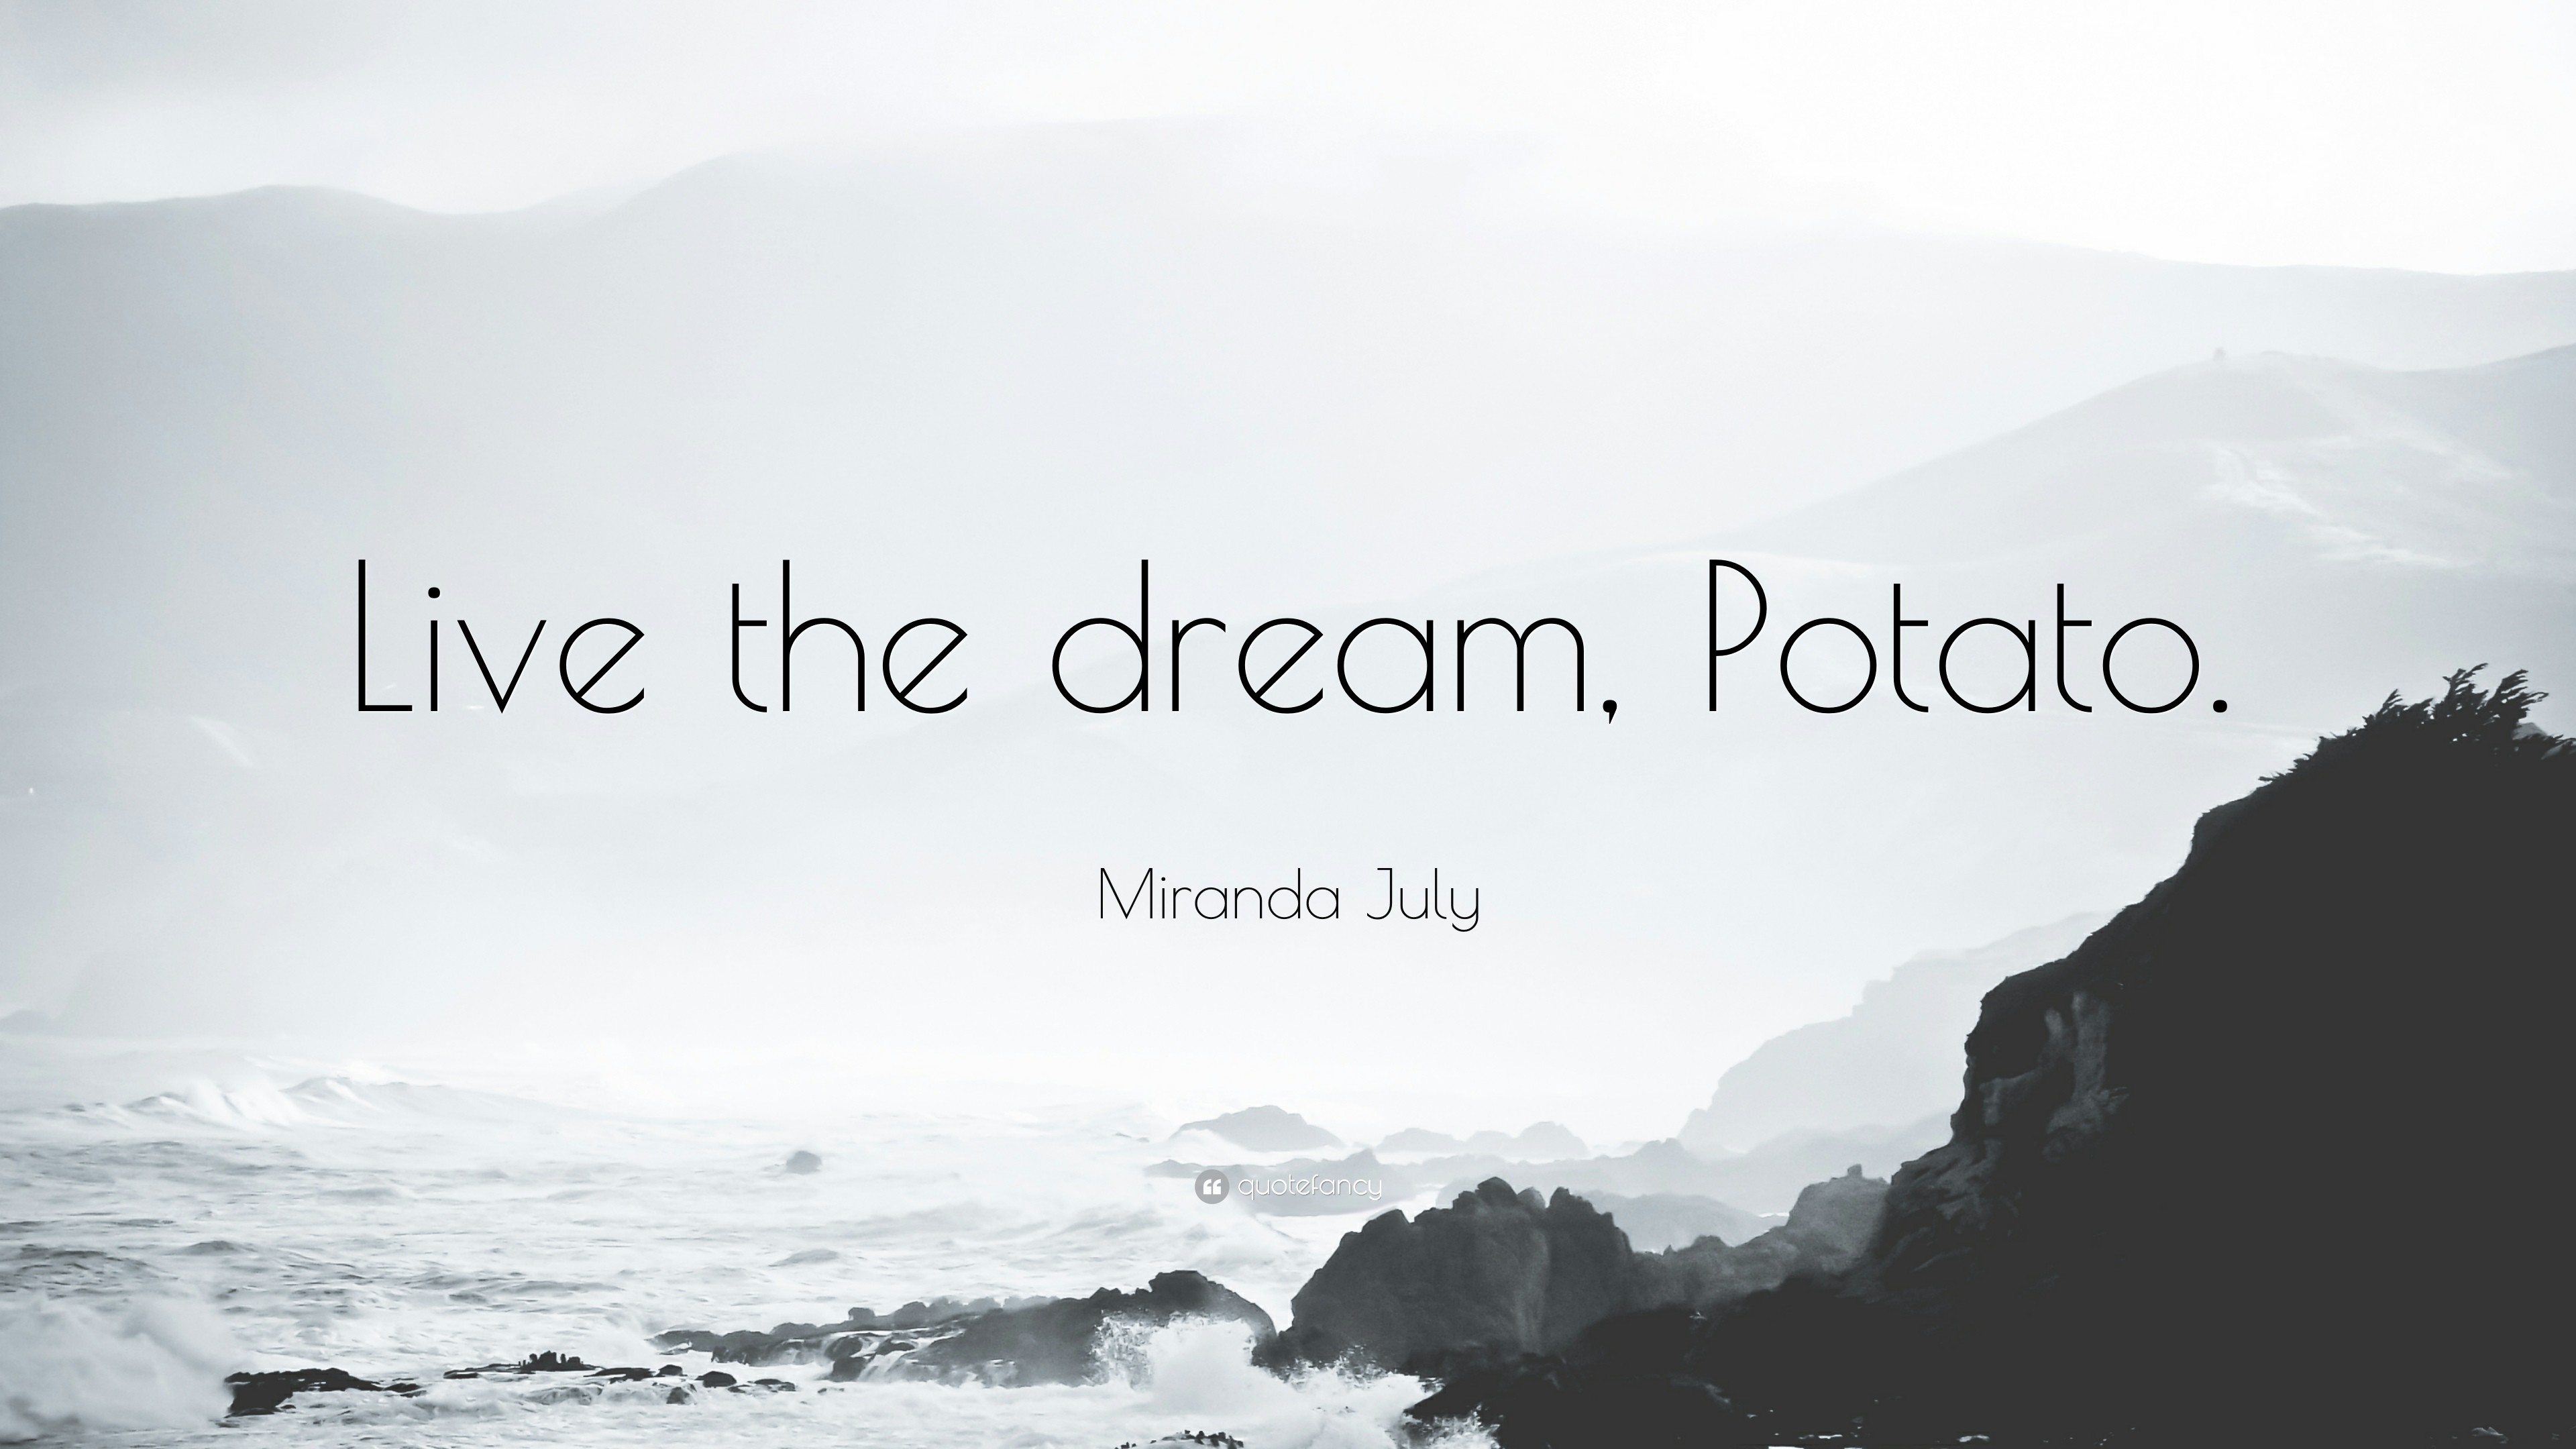 3840x2160 Miranda July Quote: “Live the dream, Potato.”